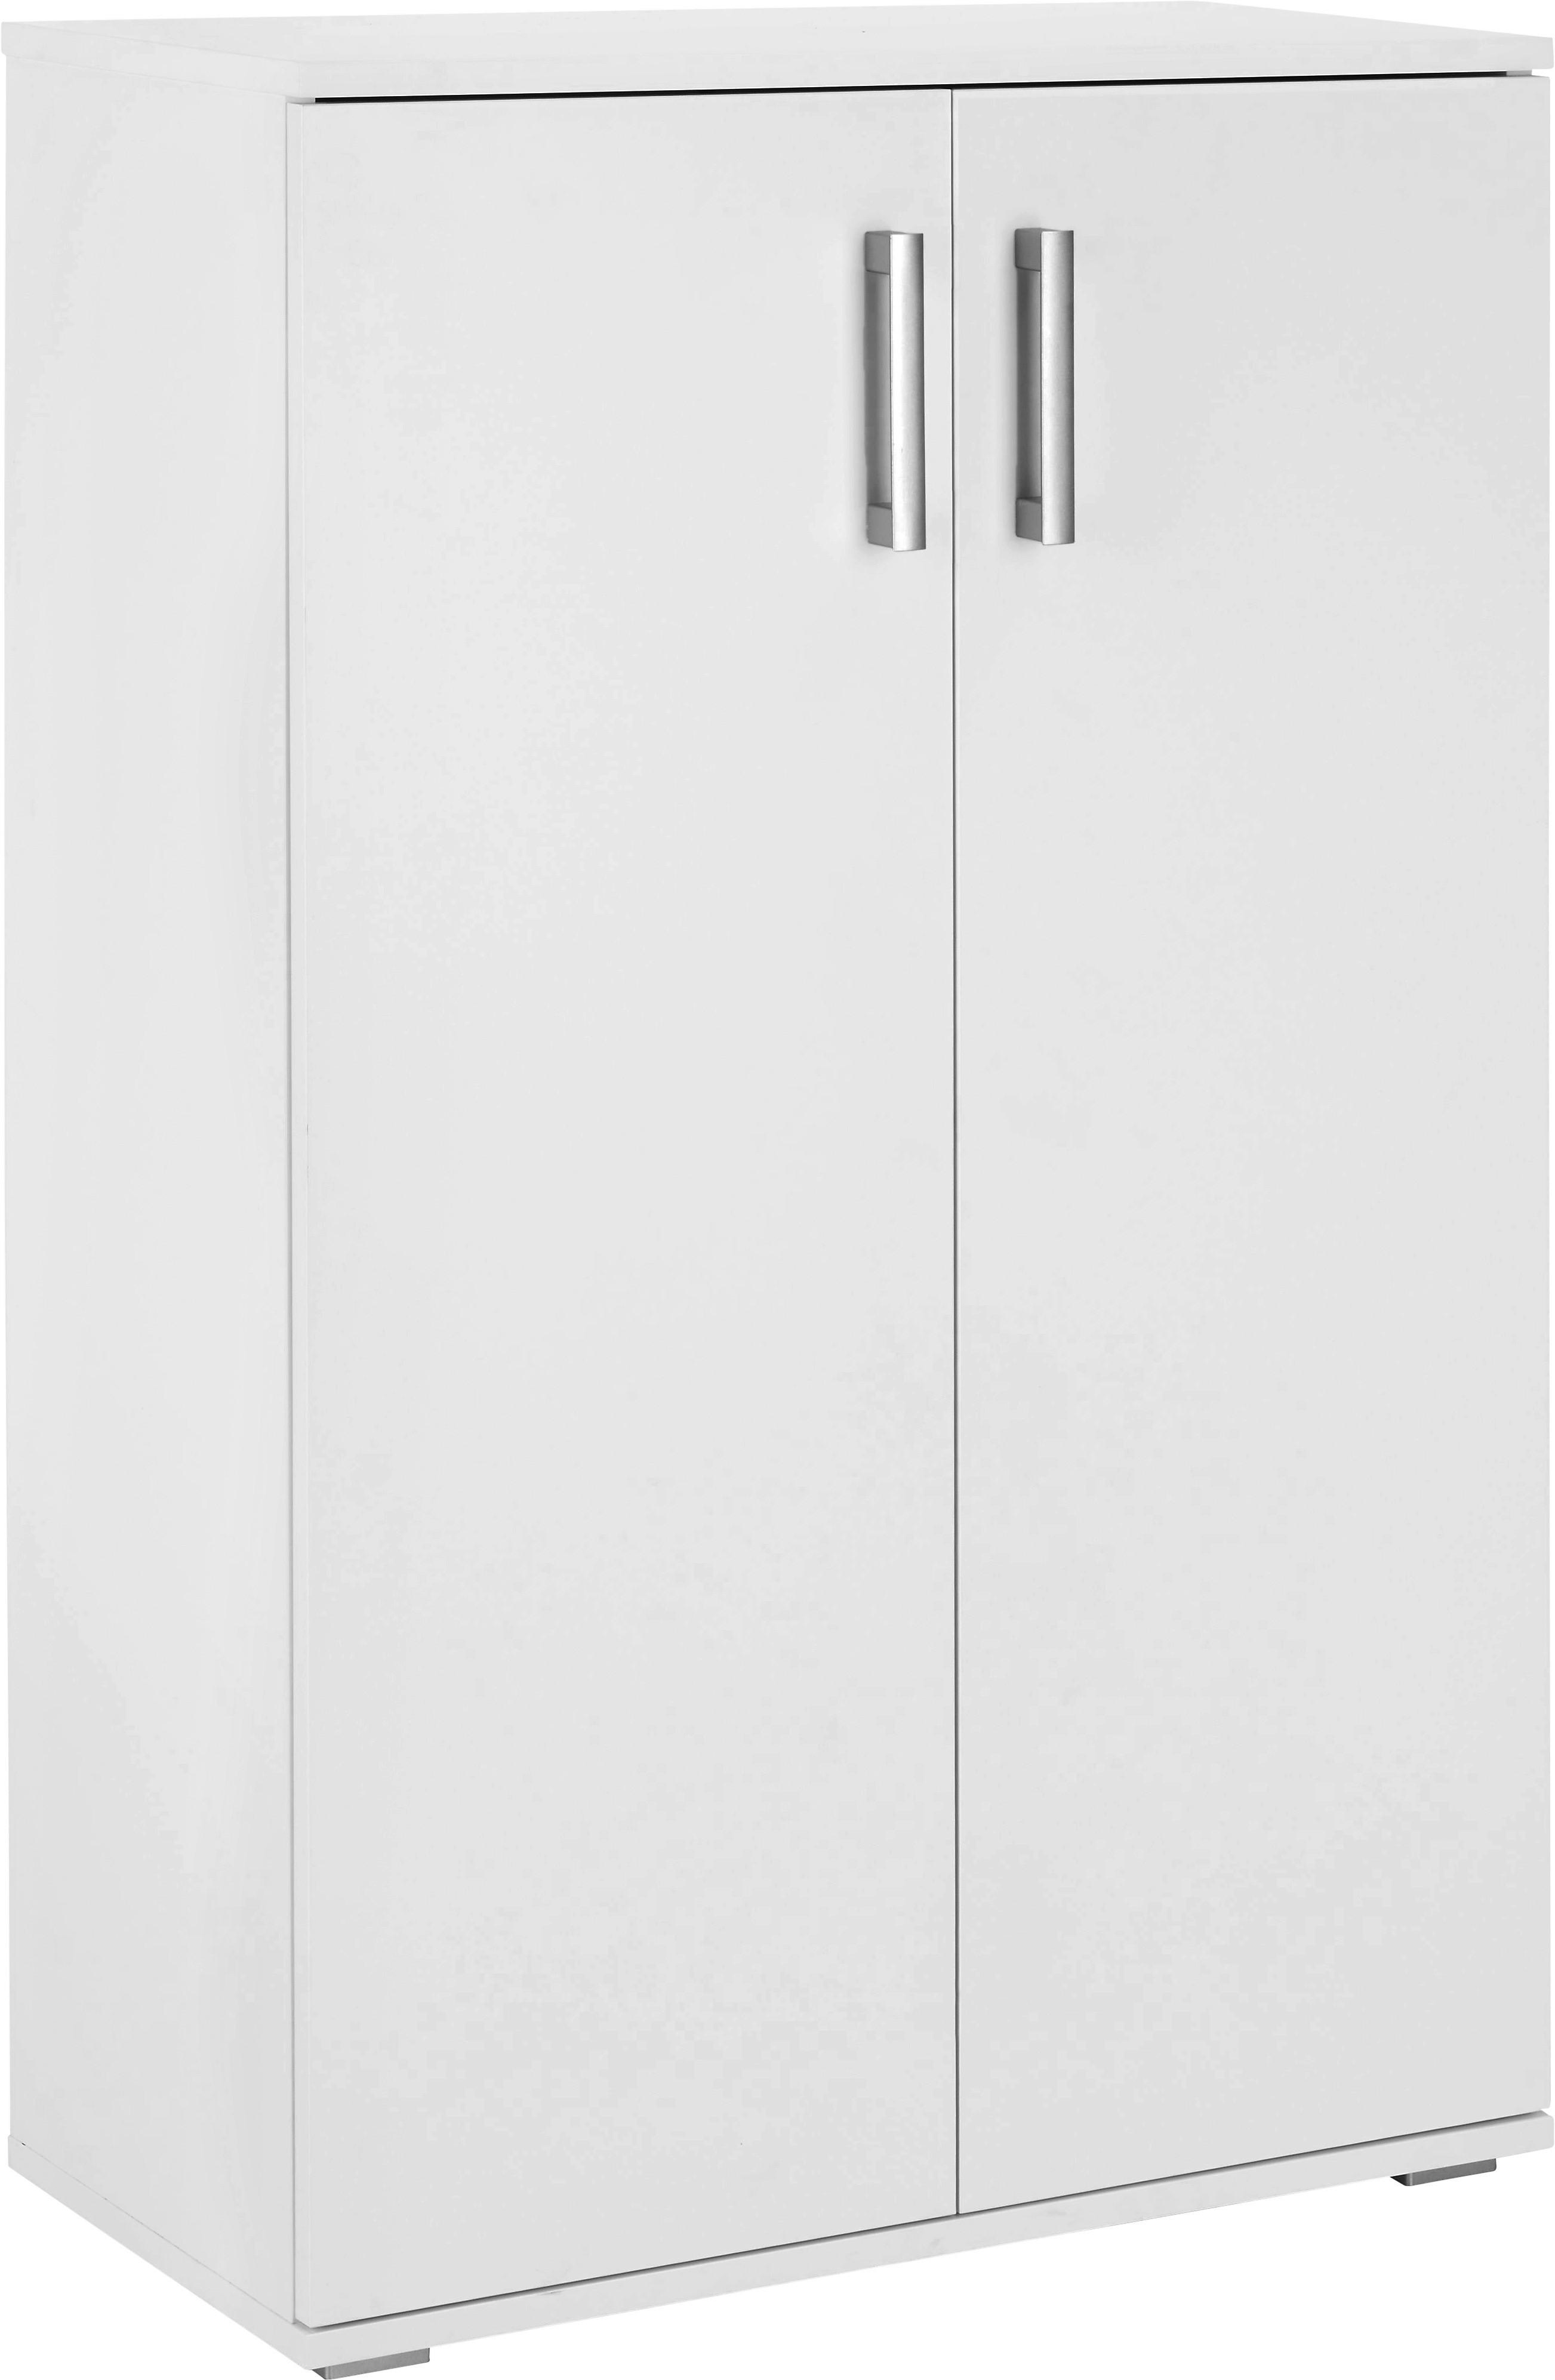 Botník Jimmy Ii - bílá/barvy hliníku, Moderní, kompozitní dřevo/plast (70/106/34cm) - Modern Living